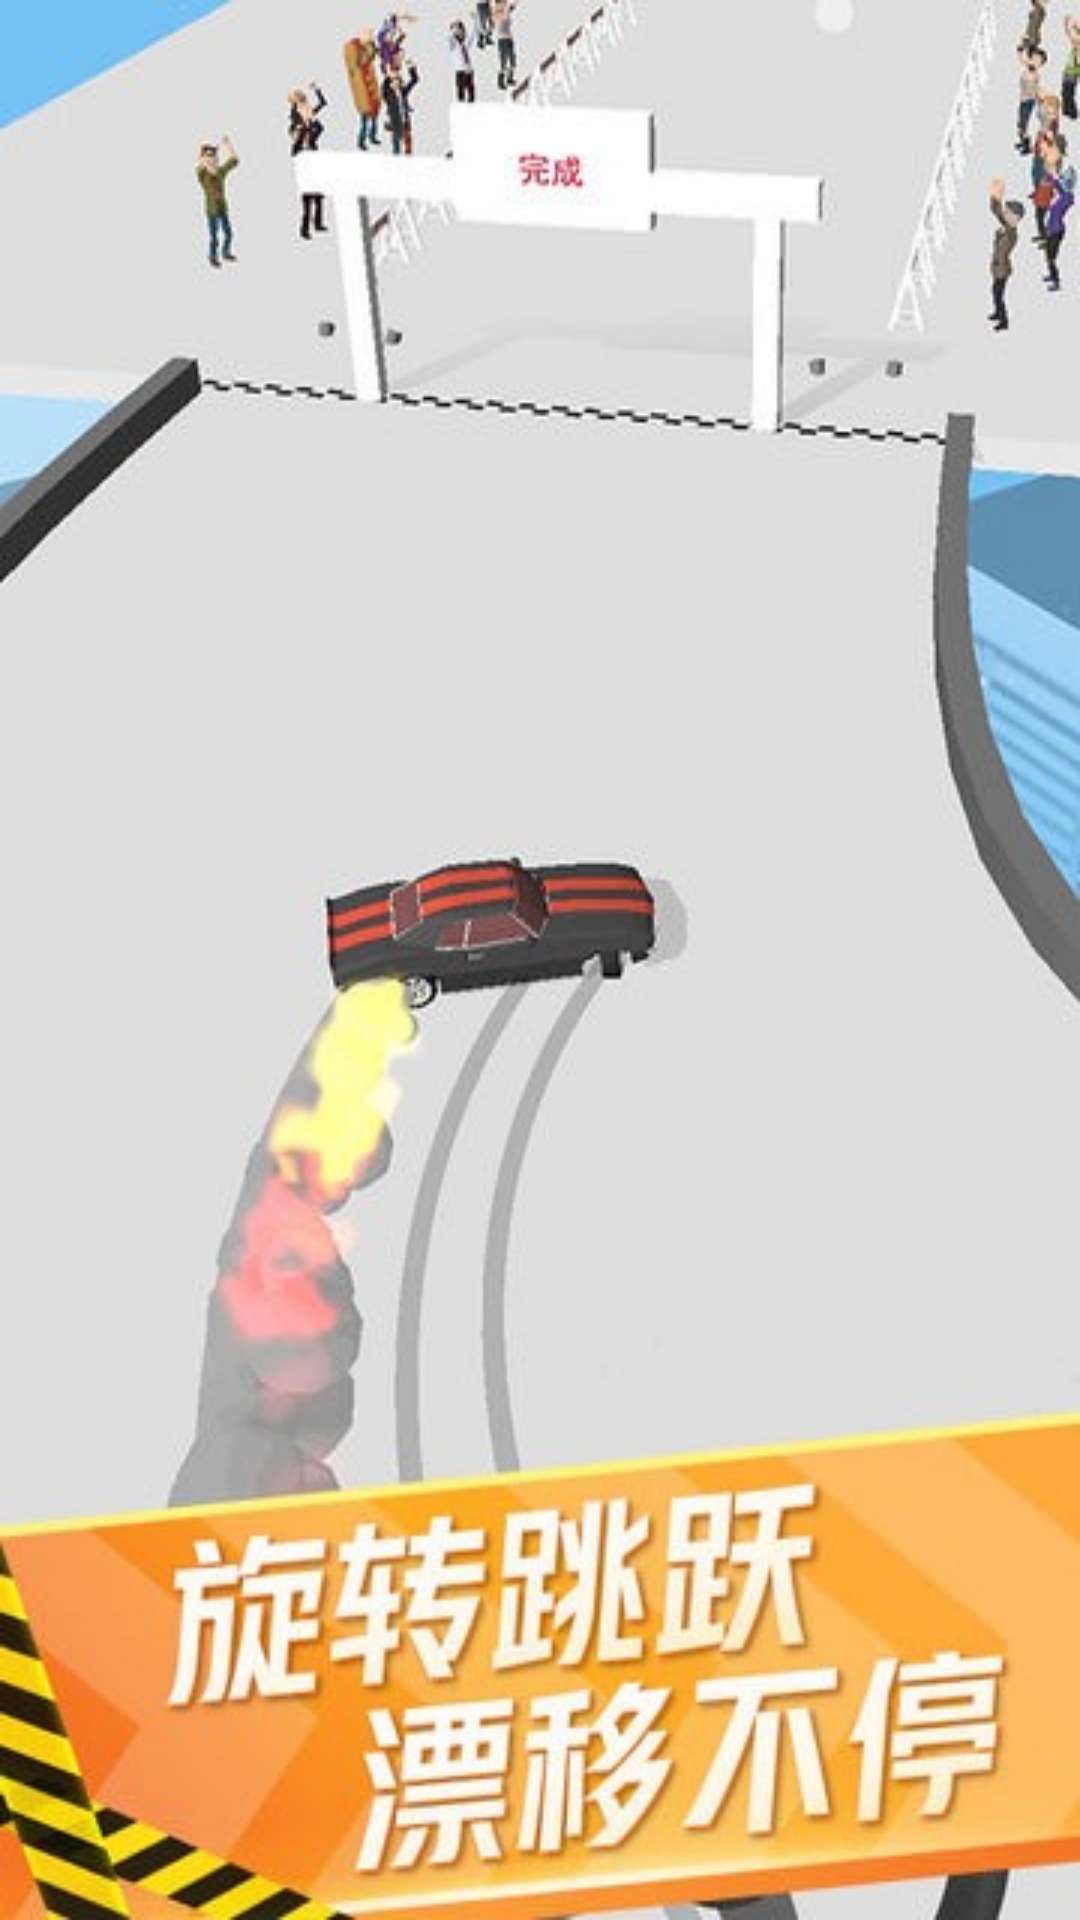 狂野飞车模拟器游戏安卓版  1.0.0图1